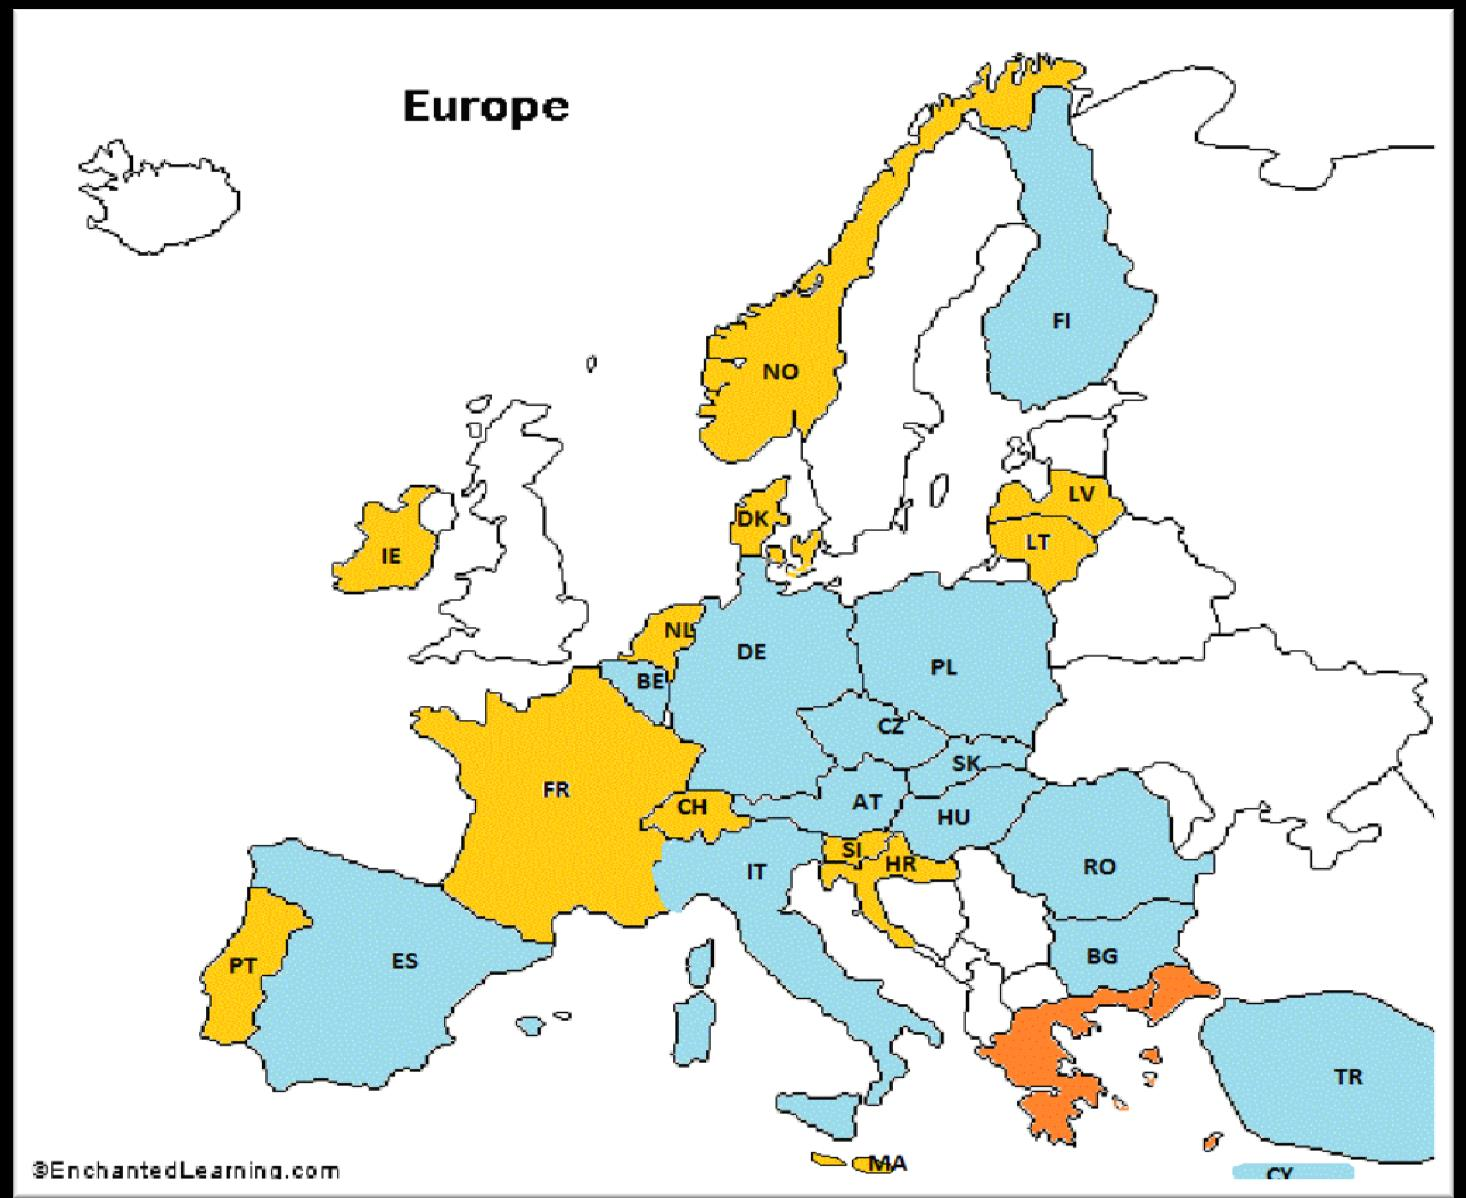 11 Η πολιτική τιμολόγησης στην Ελλάδα επηρεάζει πολλές μεγάλες χώρες εντός & εκτός Ευρώπης: